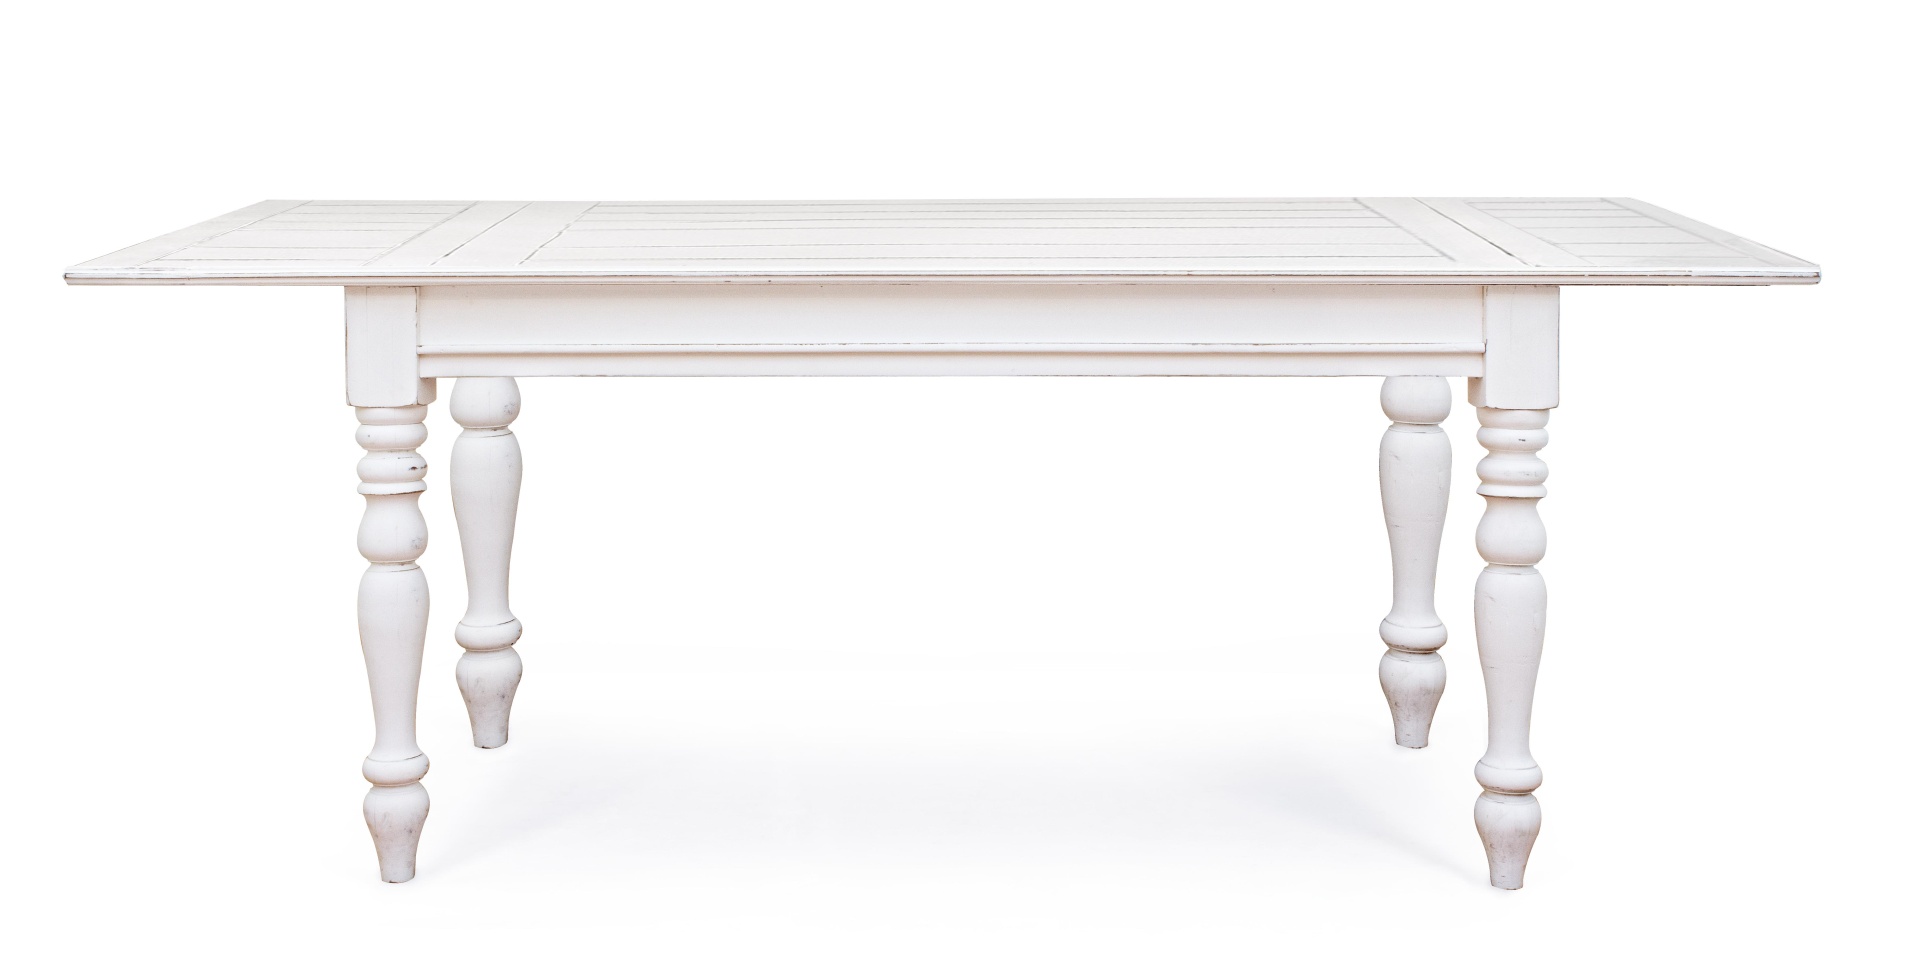 Der Esstisch Colette überzeugt mit seinem klassischem Design. Gefertigt wurde er aus Mangoholz, welches einen weißen Farbton besitzt. Das Gestell des Tisches ist auch aus MAngoholz. Der Tisch ist ausziehbar von einer Breite von 150 cm auf 240 cm.